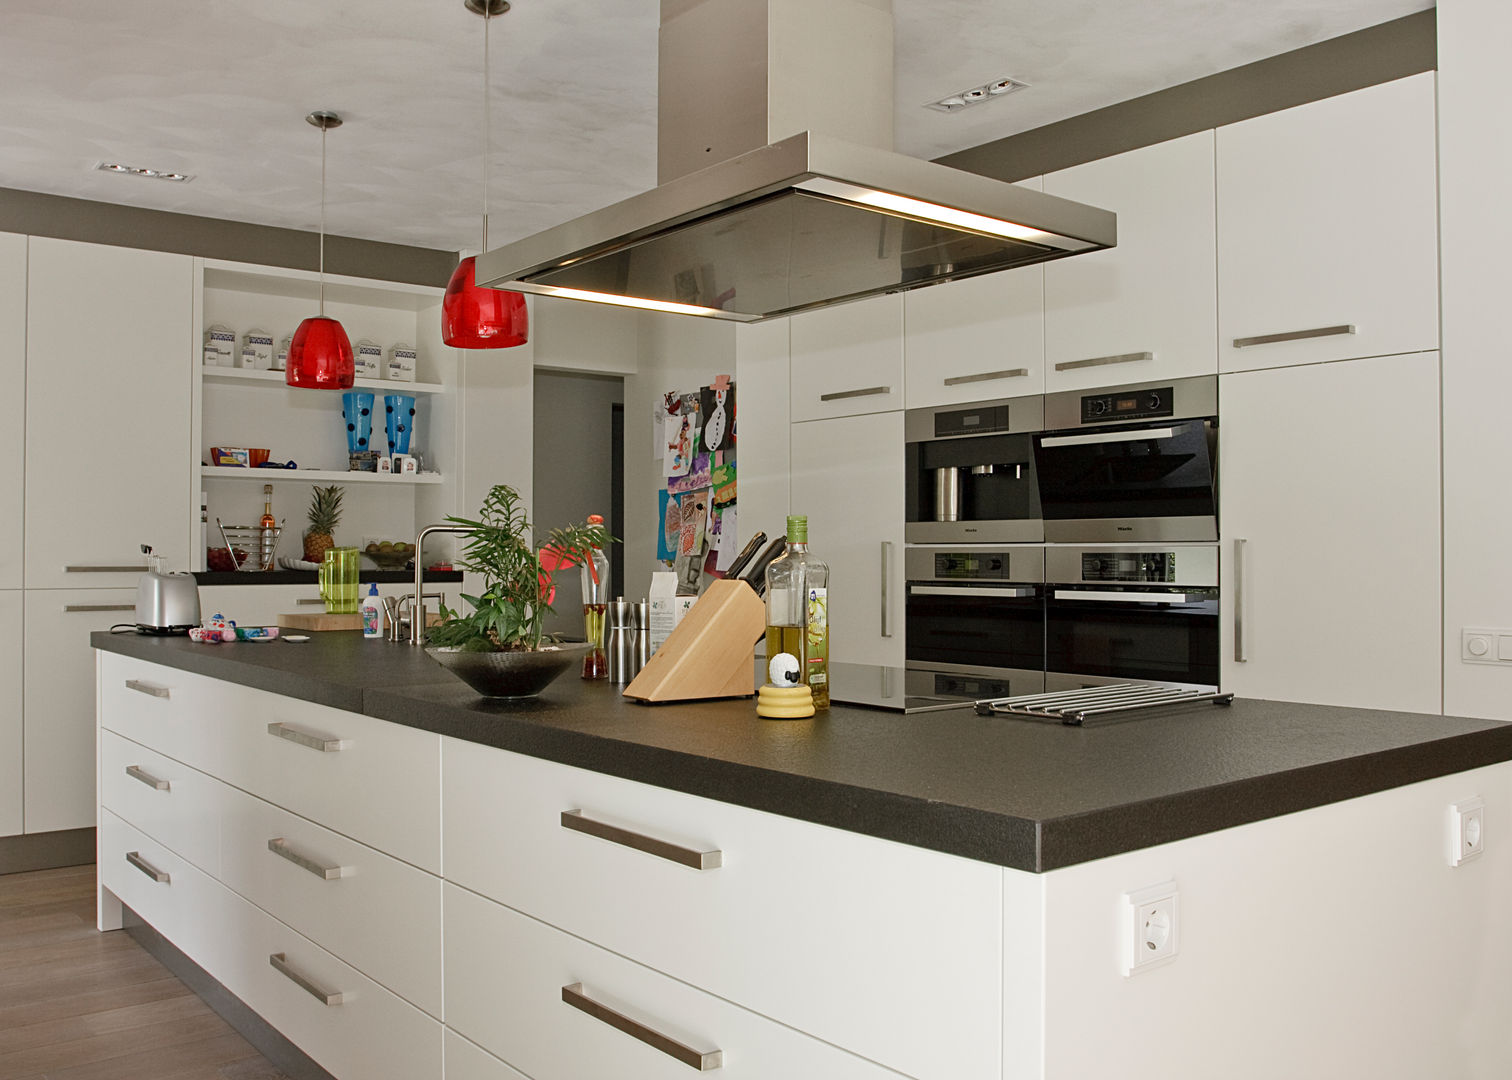 Open keuken, ruimte, licht - een keukeneiland biedt alle mogelijkhede, Thijs van de Wouw keuken- en interieurbouw Thijs van de Wouw keuken- en interieurbouw Cuisine moderne